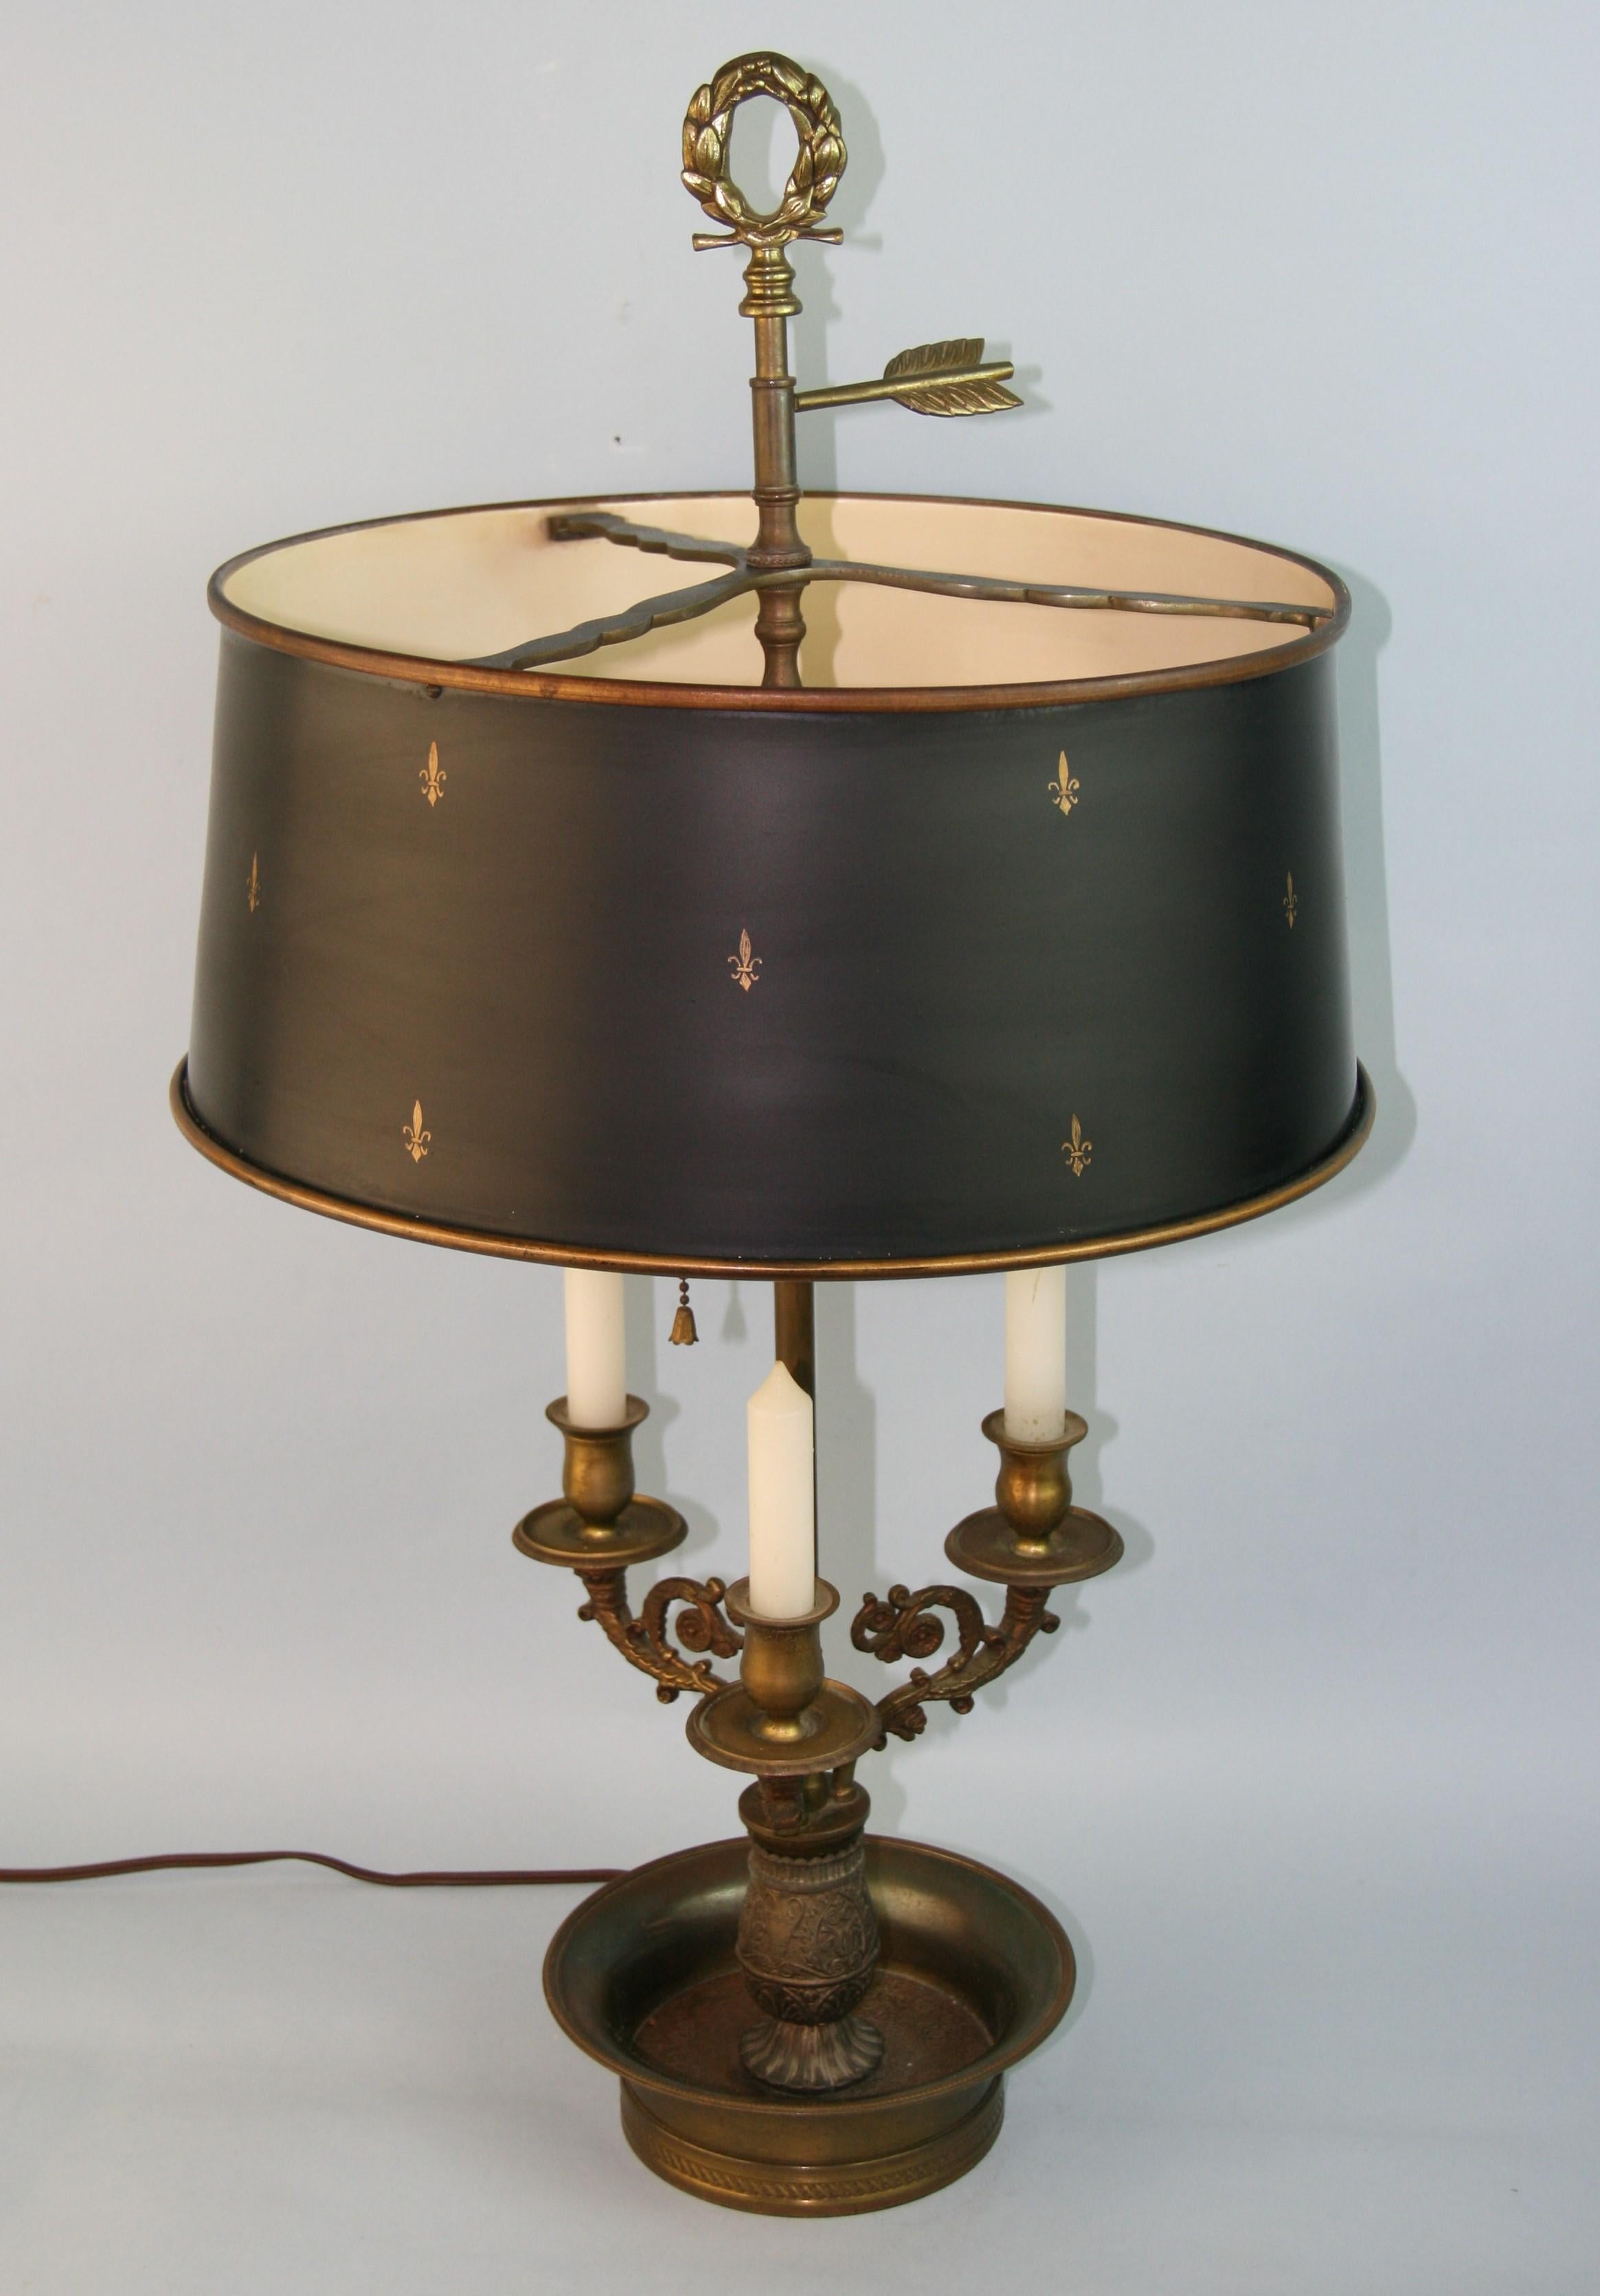 3-1147 Lampe française détaillée en laiton avec faisceau de 2 lumières.
Convient à 2 ampoules Edison de 60 watts.
Possède 3 bougies de cire
Câblage d'origine en état de fonctionnement